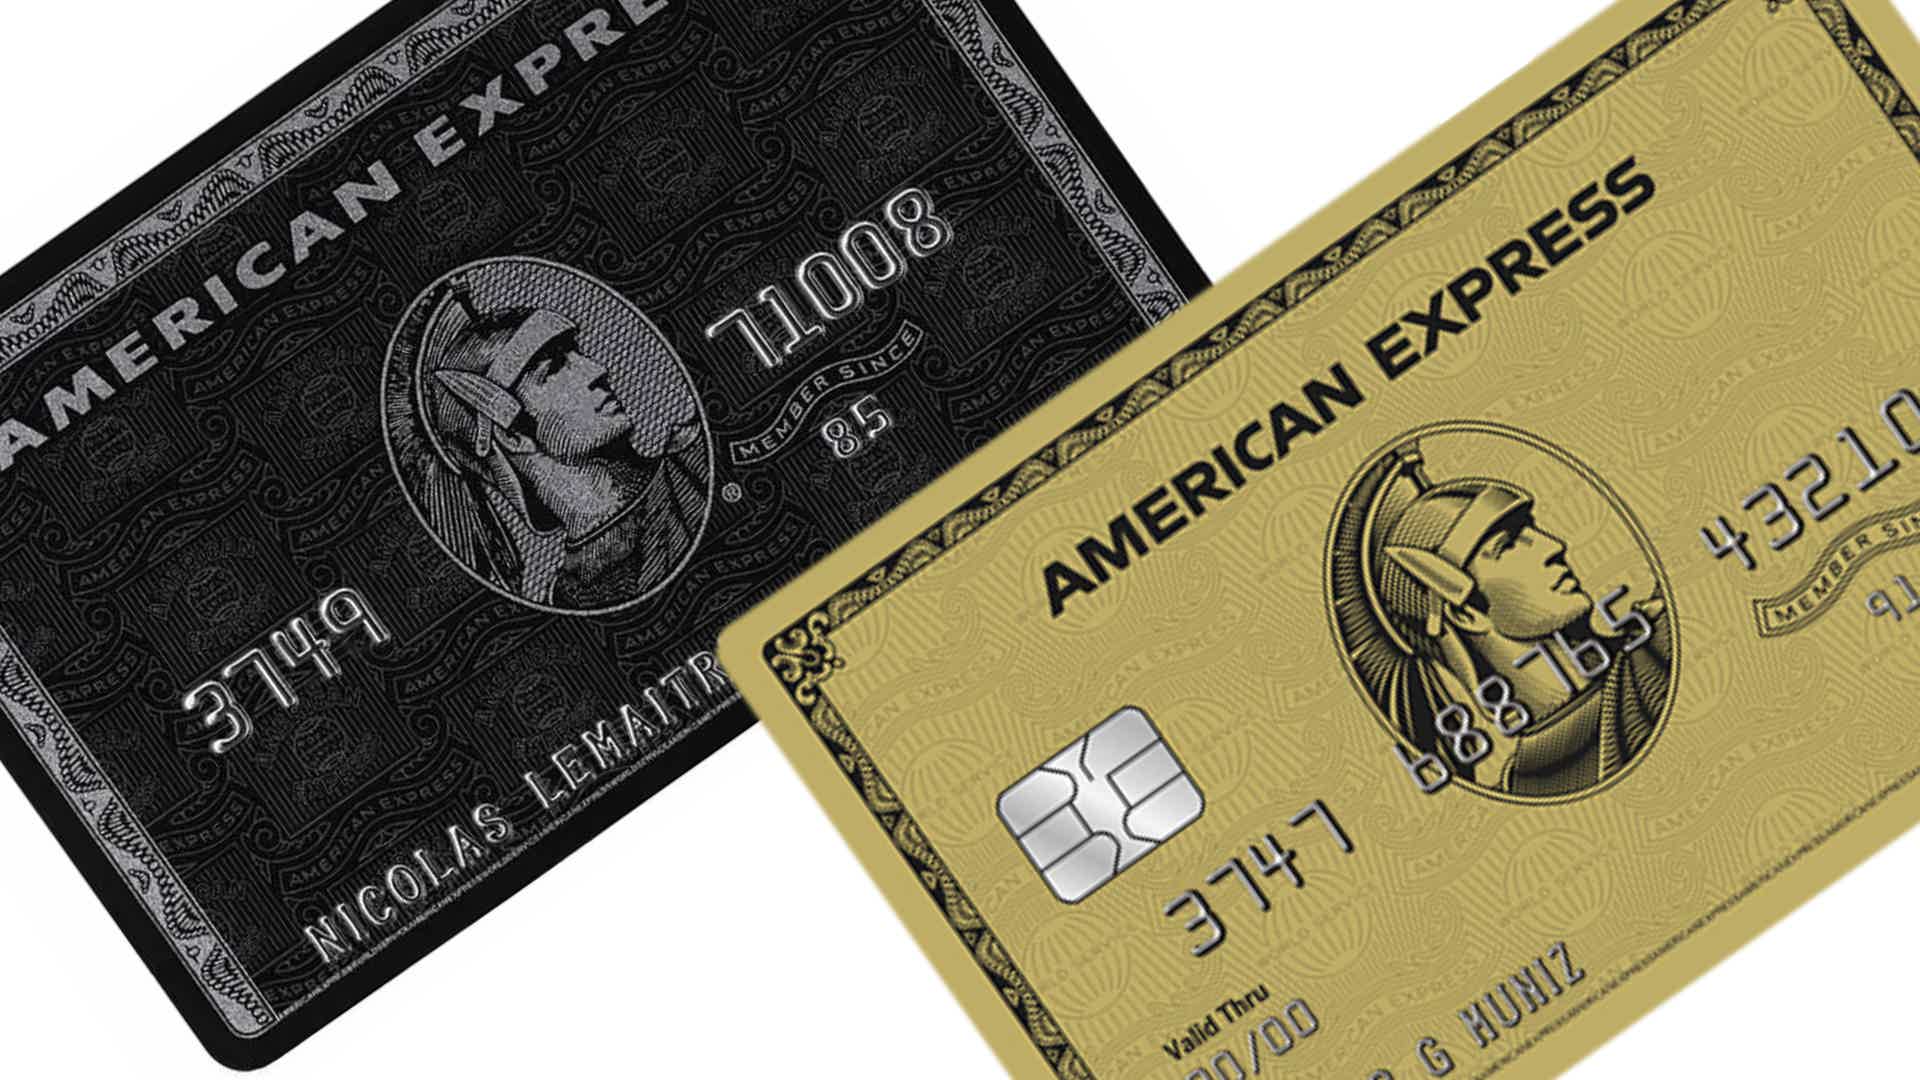 Mas, afinal, qual é o melhor cartão? Fonte: American Express.